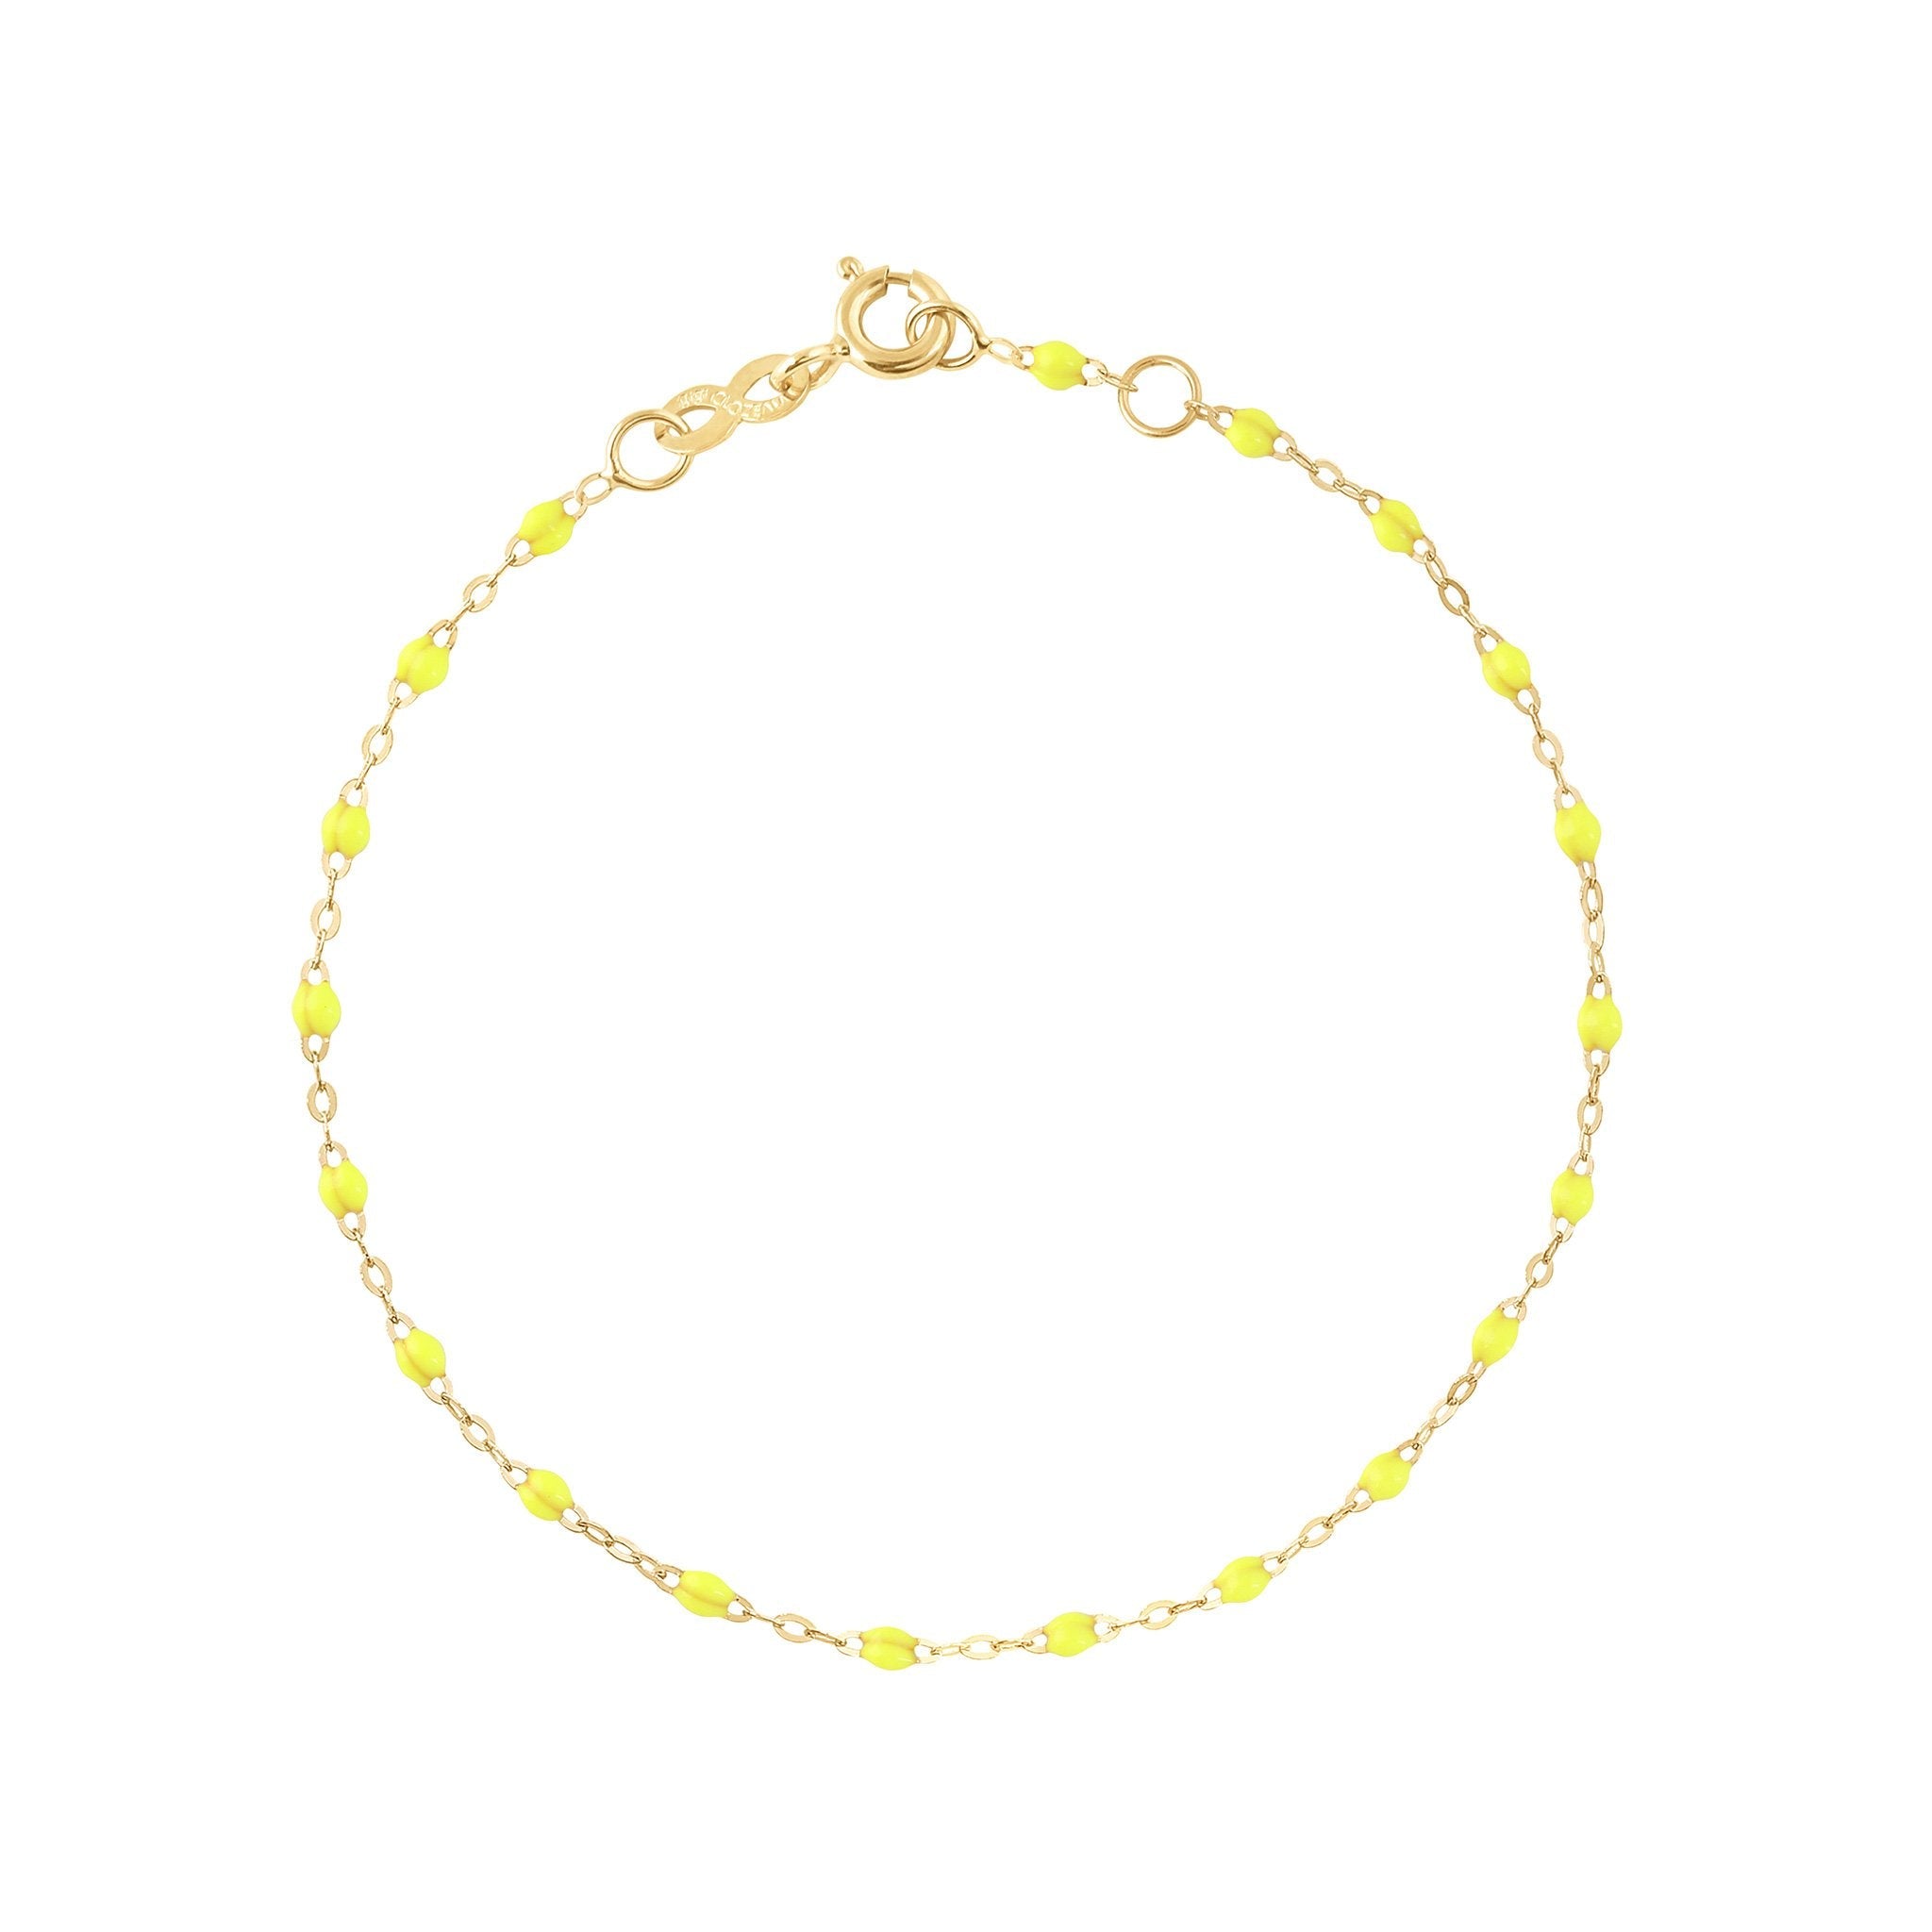 Gigi Clozeau - Bracelet jaune fluo Classique Gigi, or jaune, 19 cm